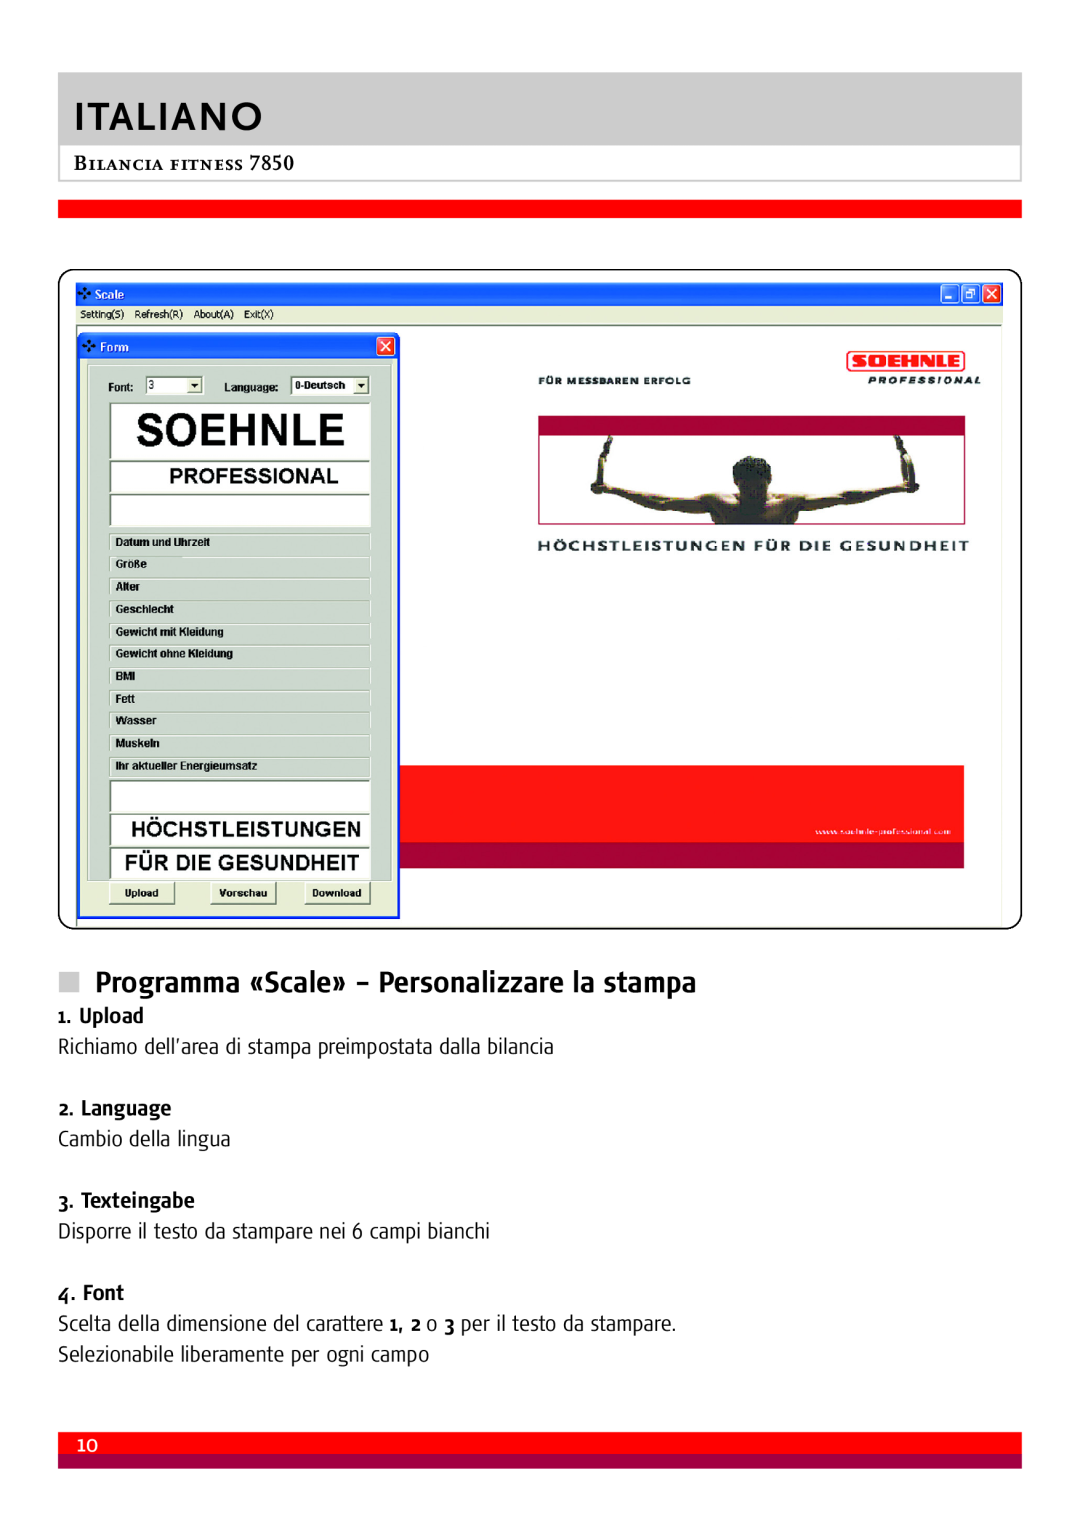 Soehnle 7850 Programma «Scale» - Personalizzare la stampa, Language Cambio della lingua 3. Texteingabe, Italiano, Upload 